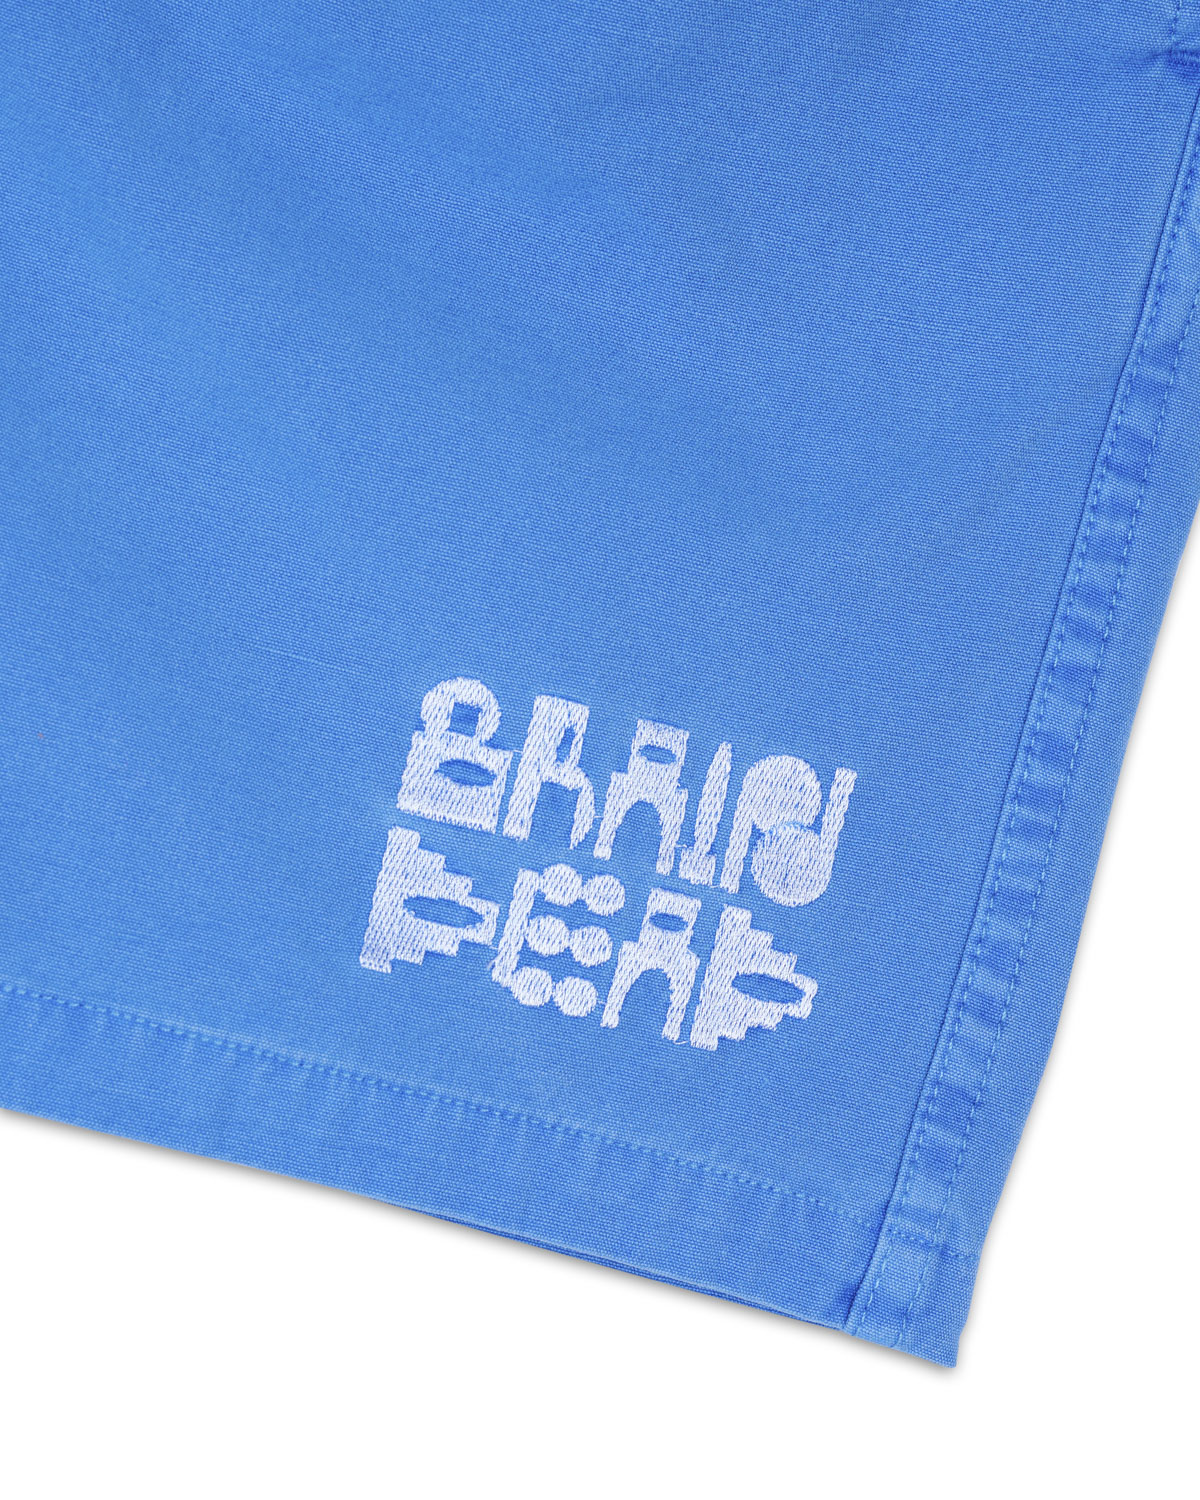 Pigment Core Shorts, Royal Blue